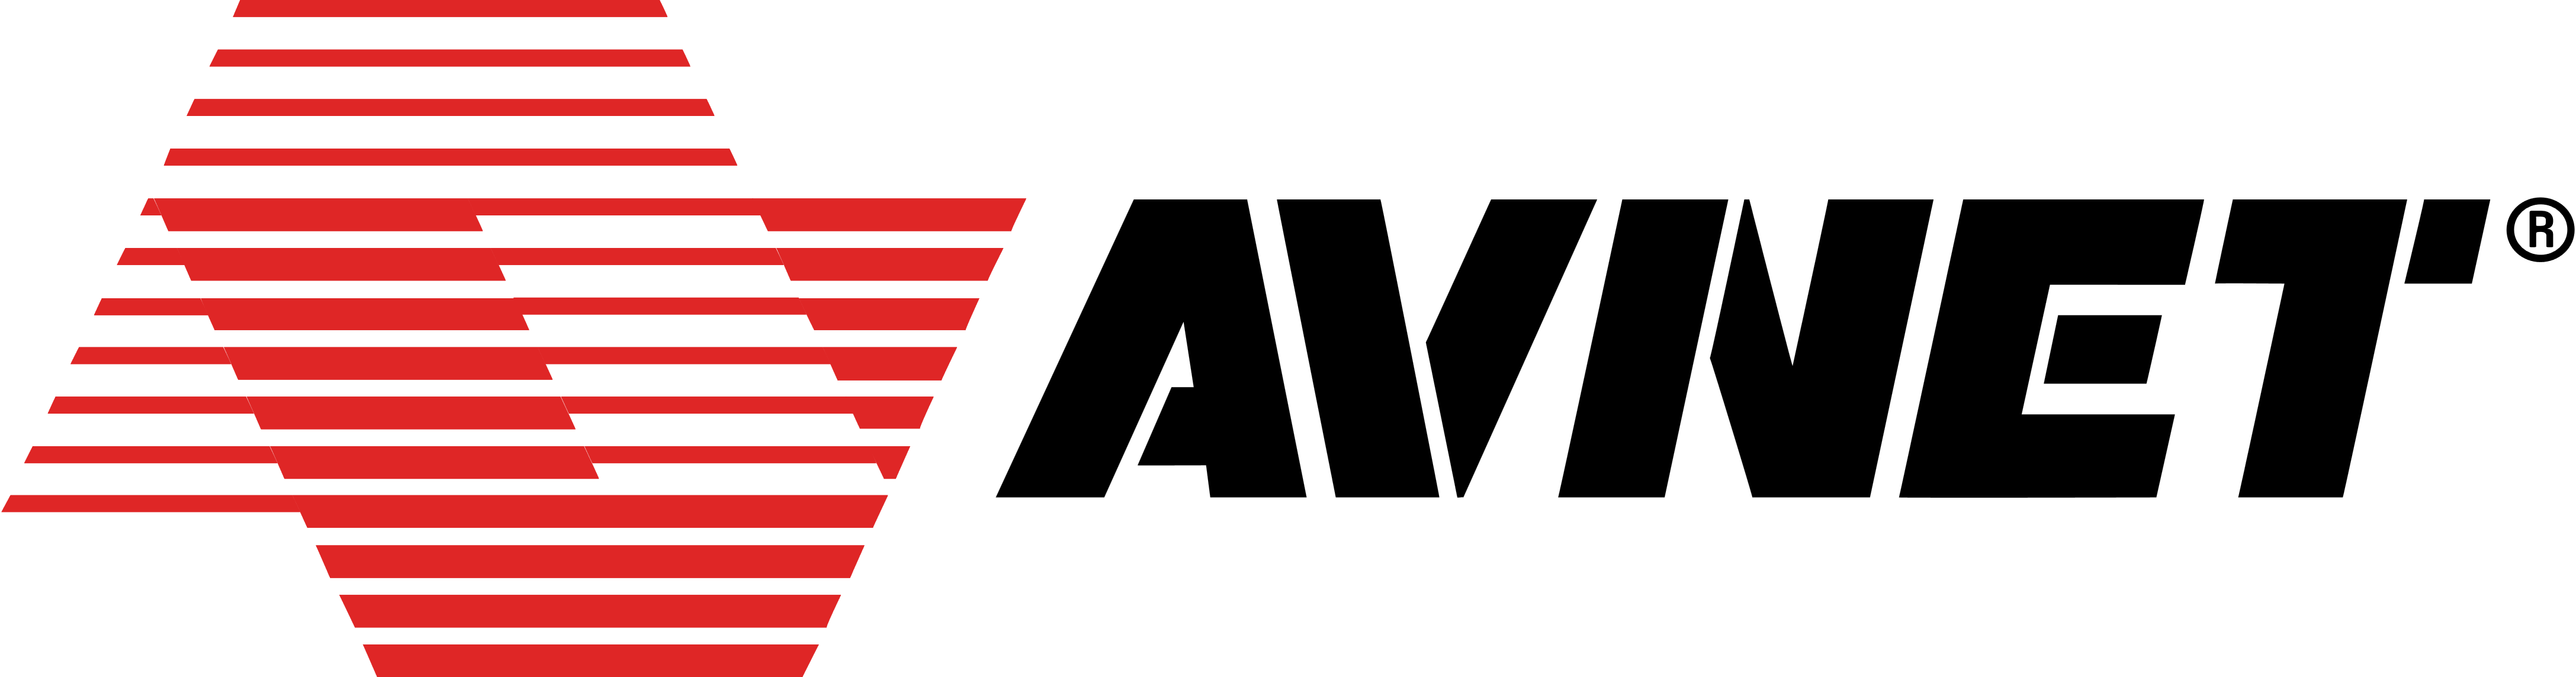 Avnet logo, logotype